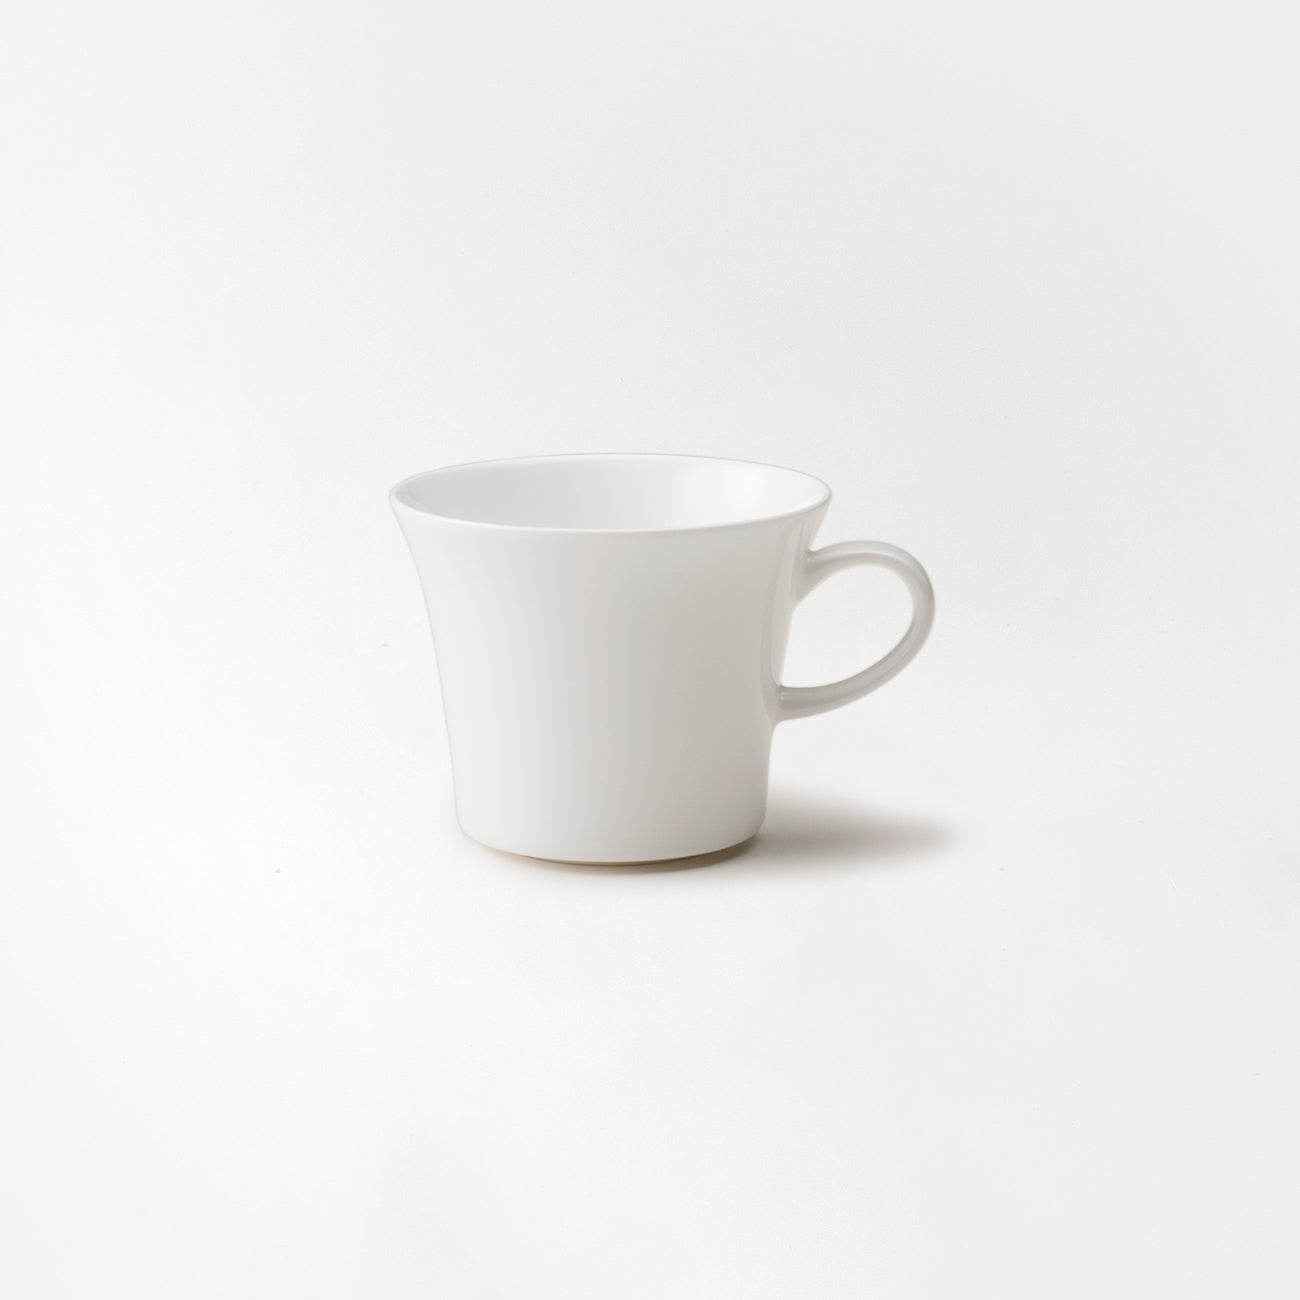 【復興支援商品】コーヒー碗皿 (200cc)